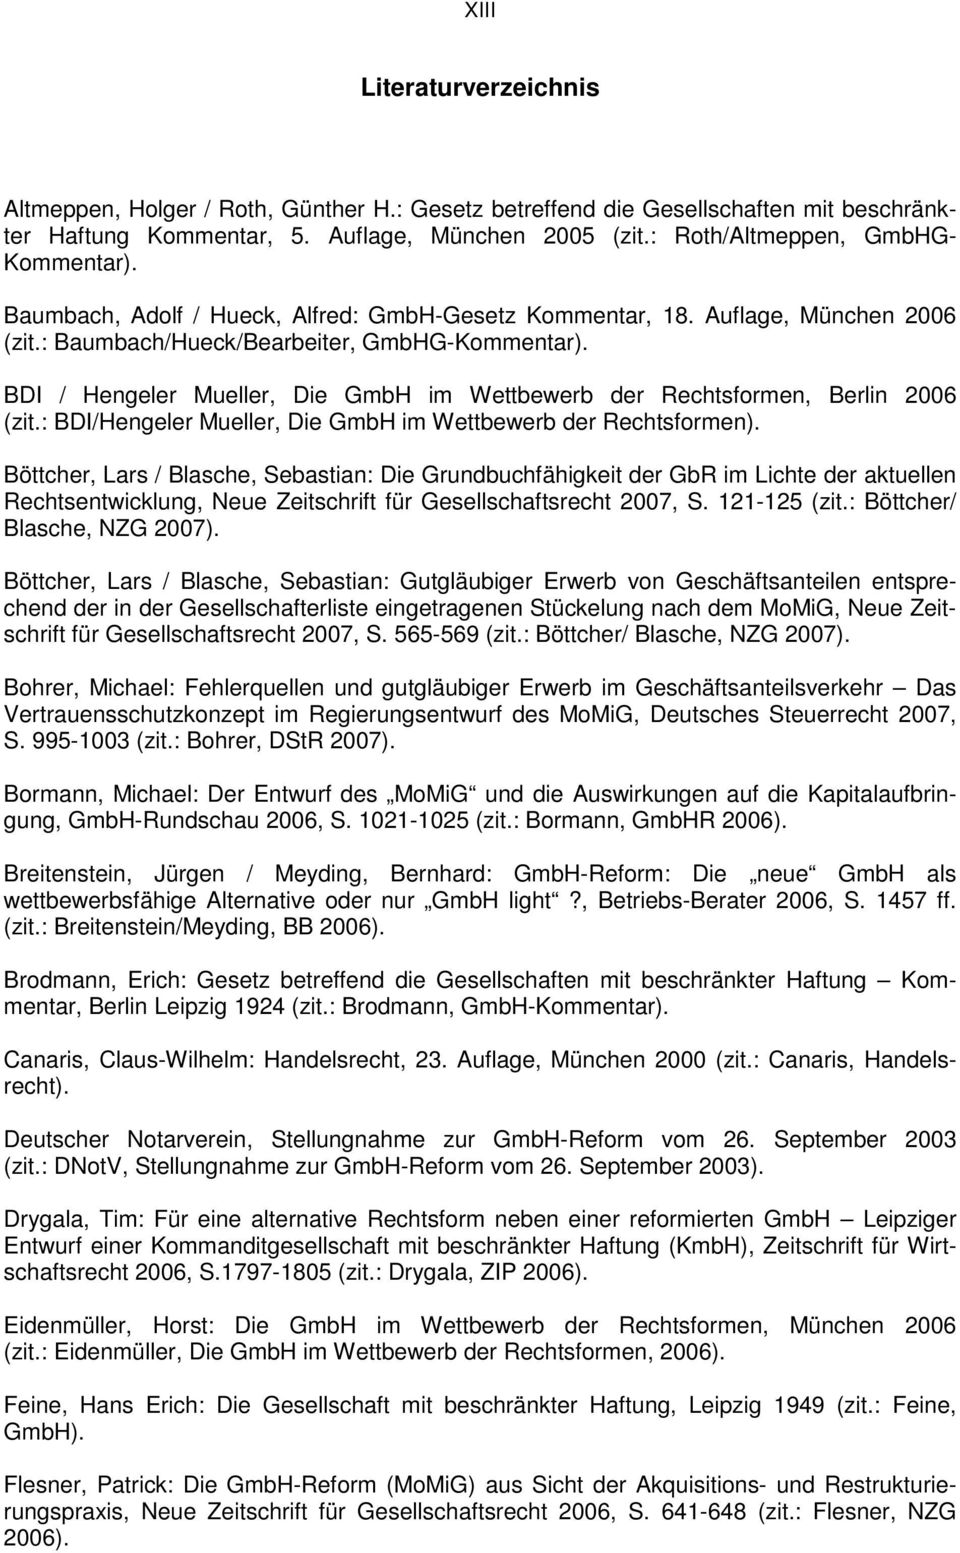 BDI / Hengeler Mueller, Die GmbH im Wettbewerb der Rechtsformen, Berlin 2006 (zit.: BDI/Hengeler Mueller, Die GmbH im Wettbewerb der Rechtsformen).